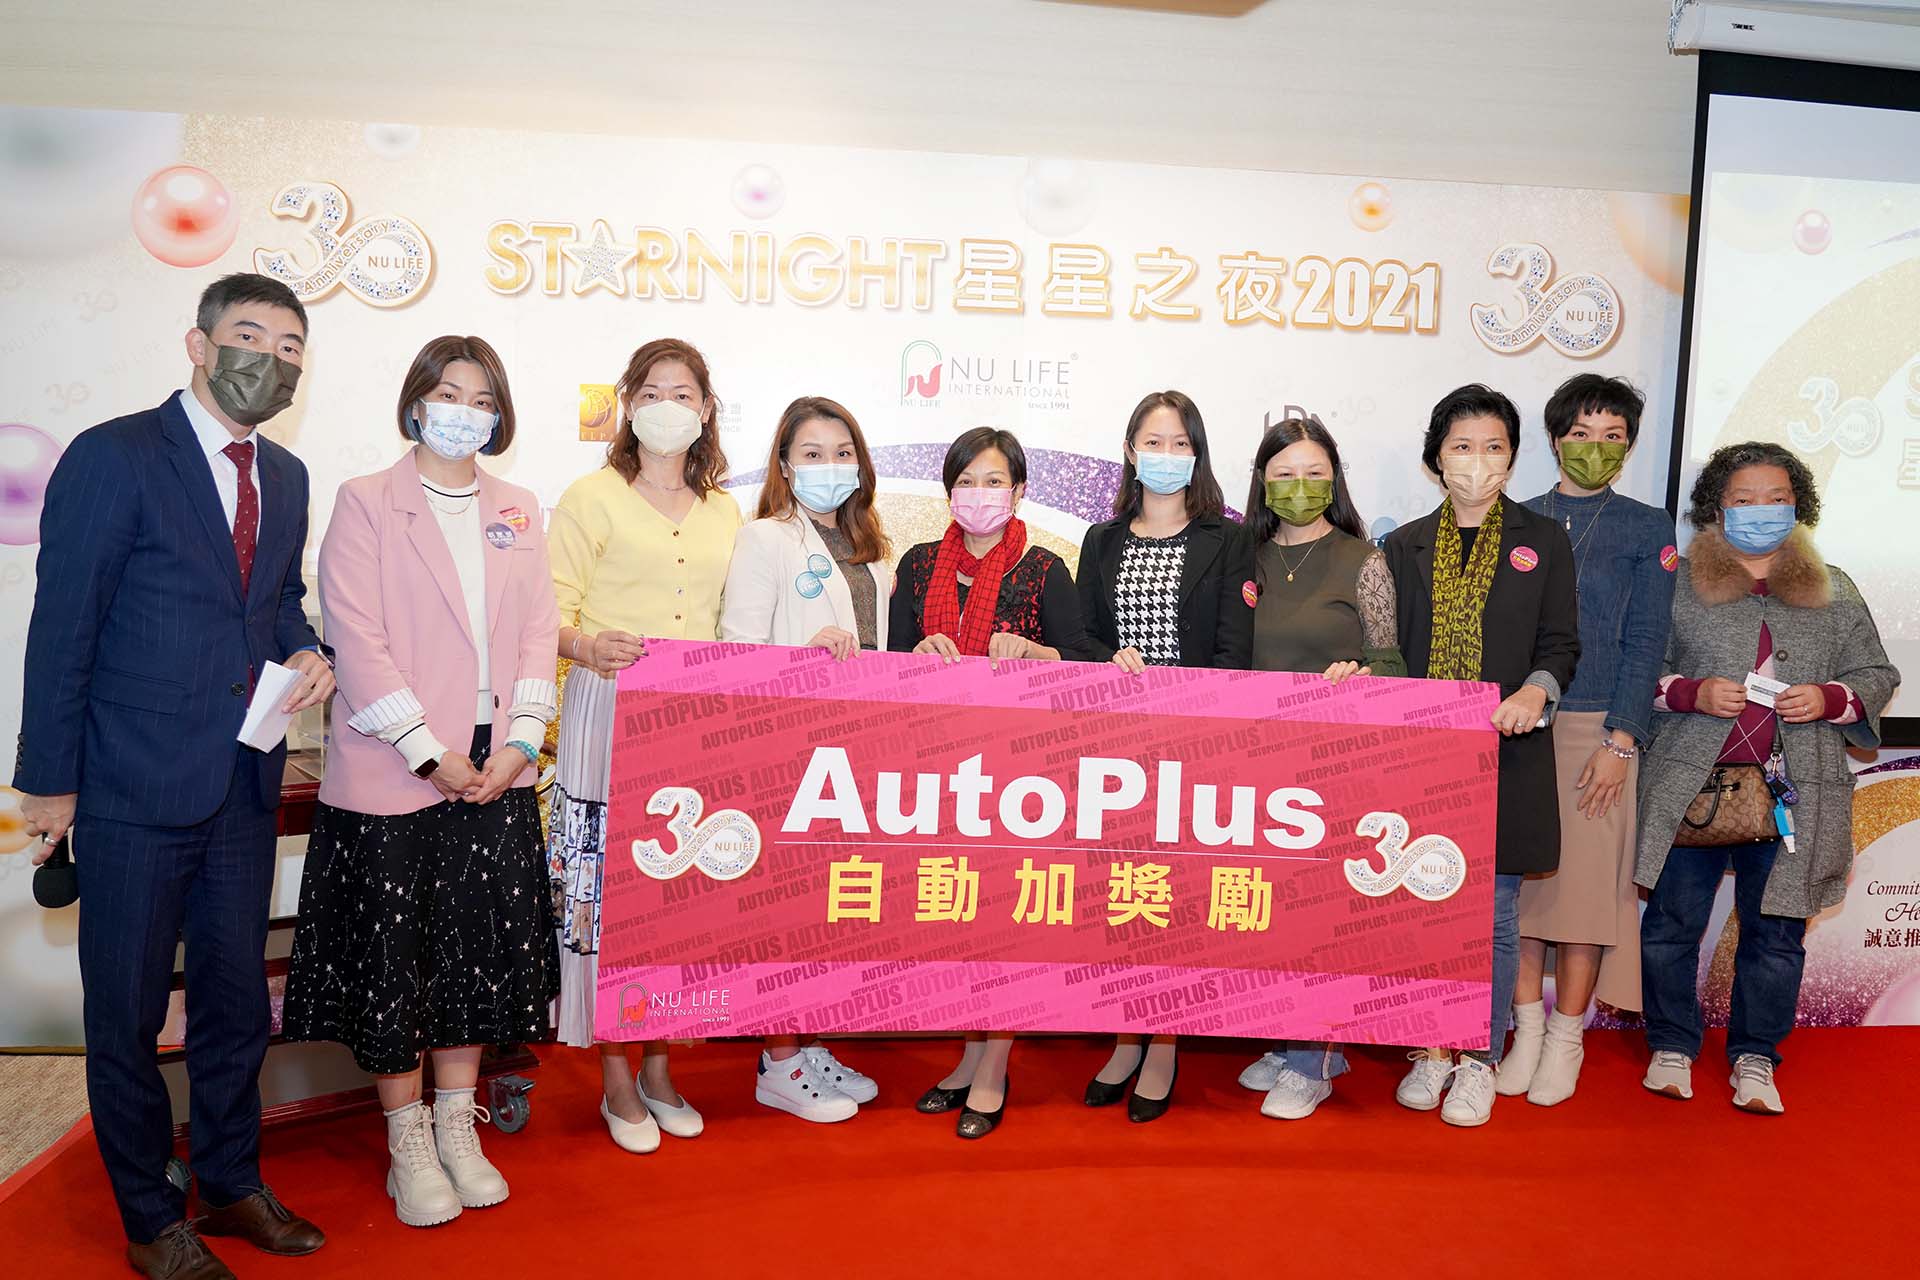 參加AutoPlus自動加，出席星星之夜最高可享HK$1000產品券